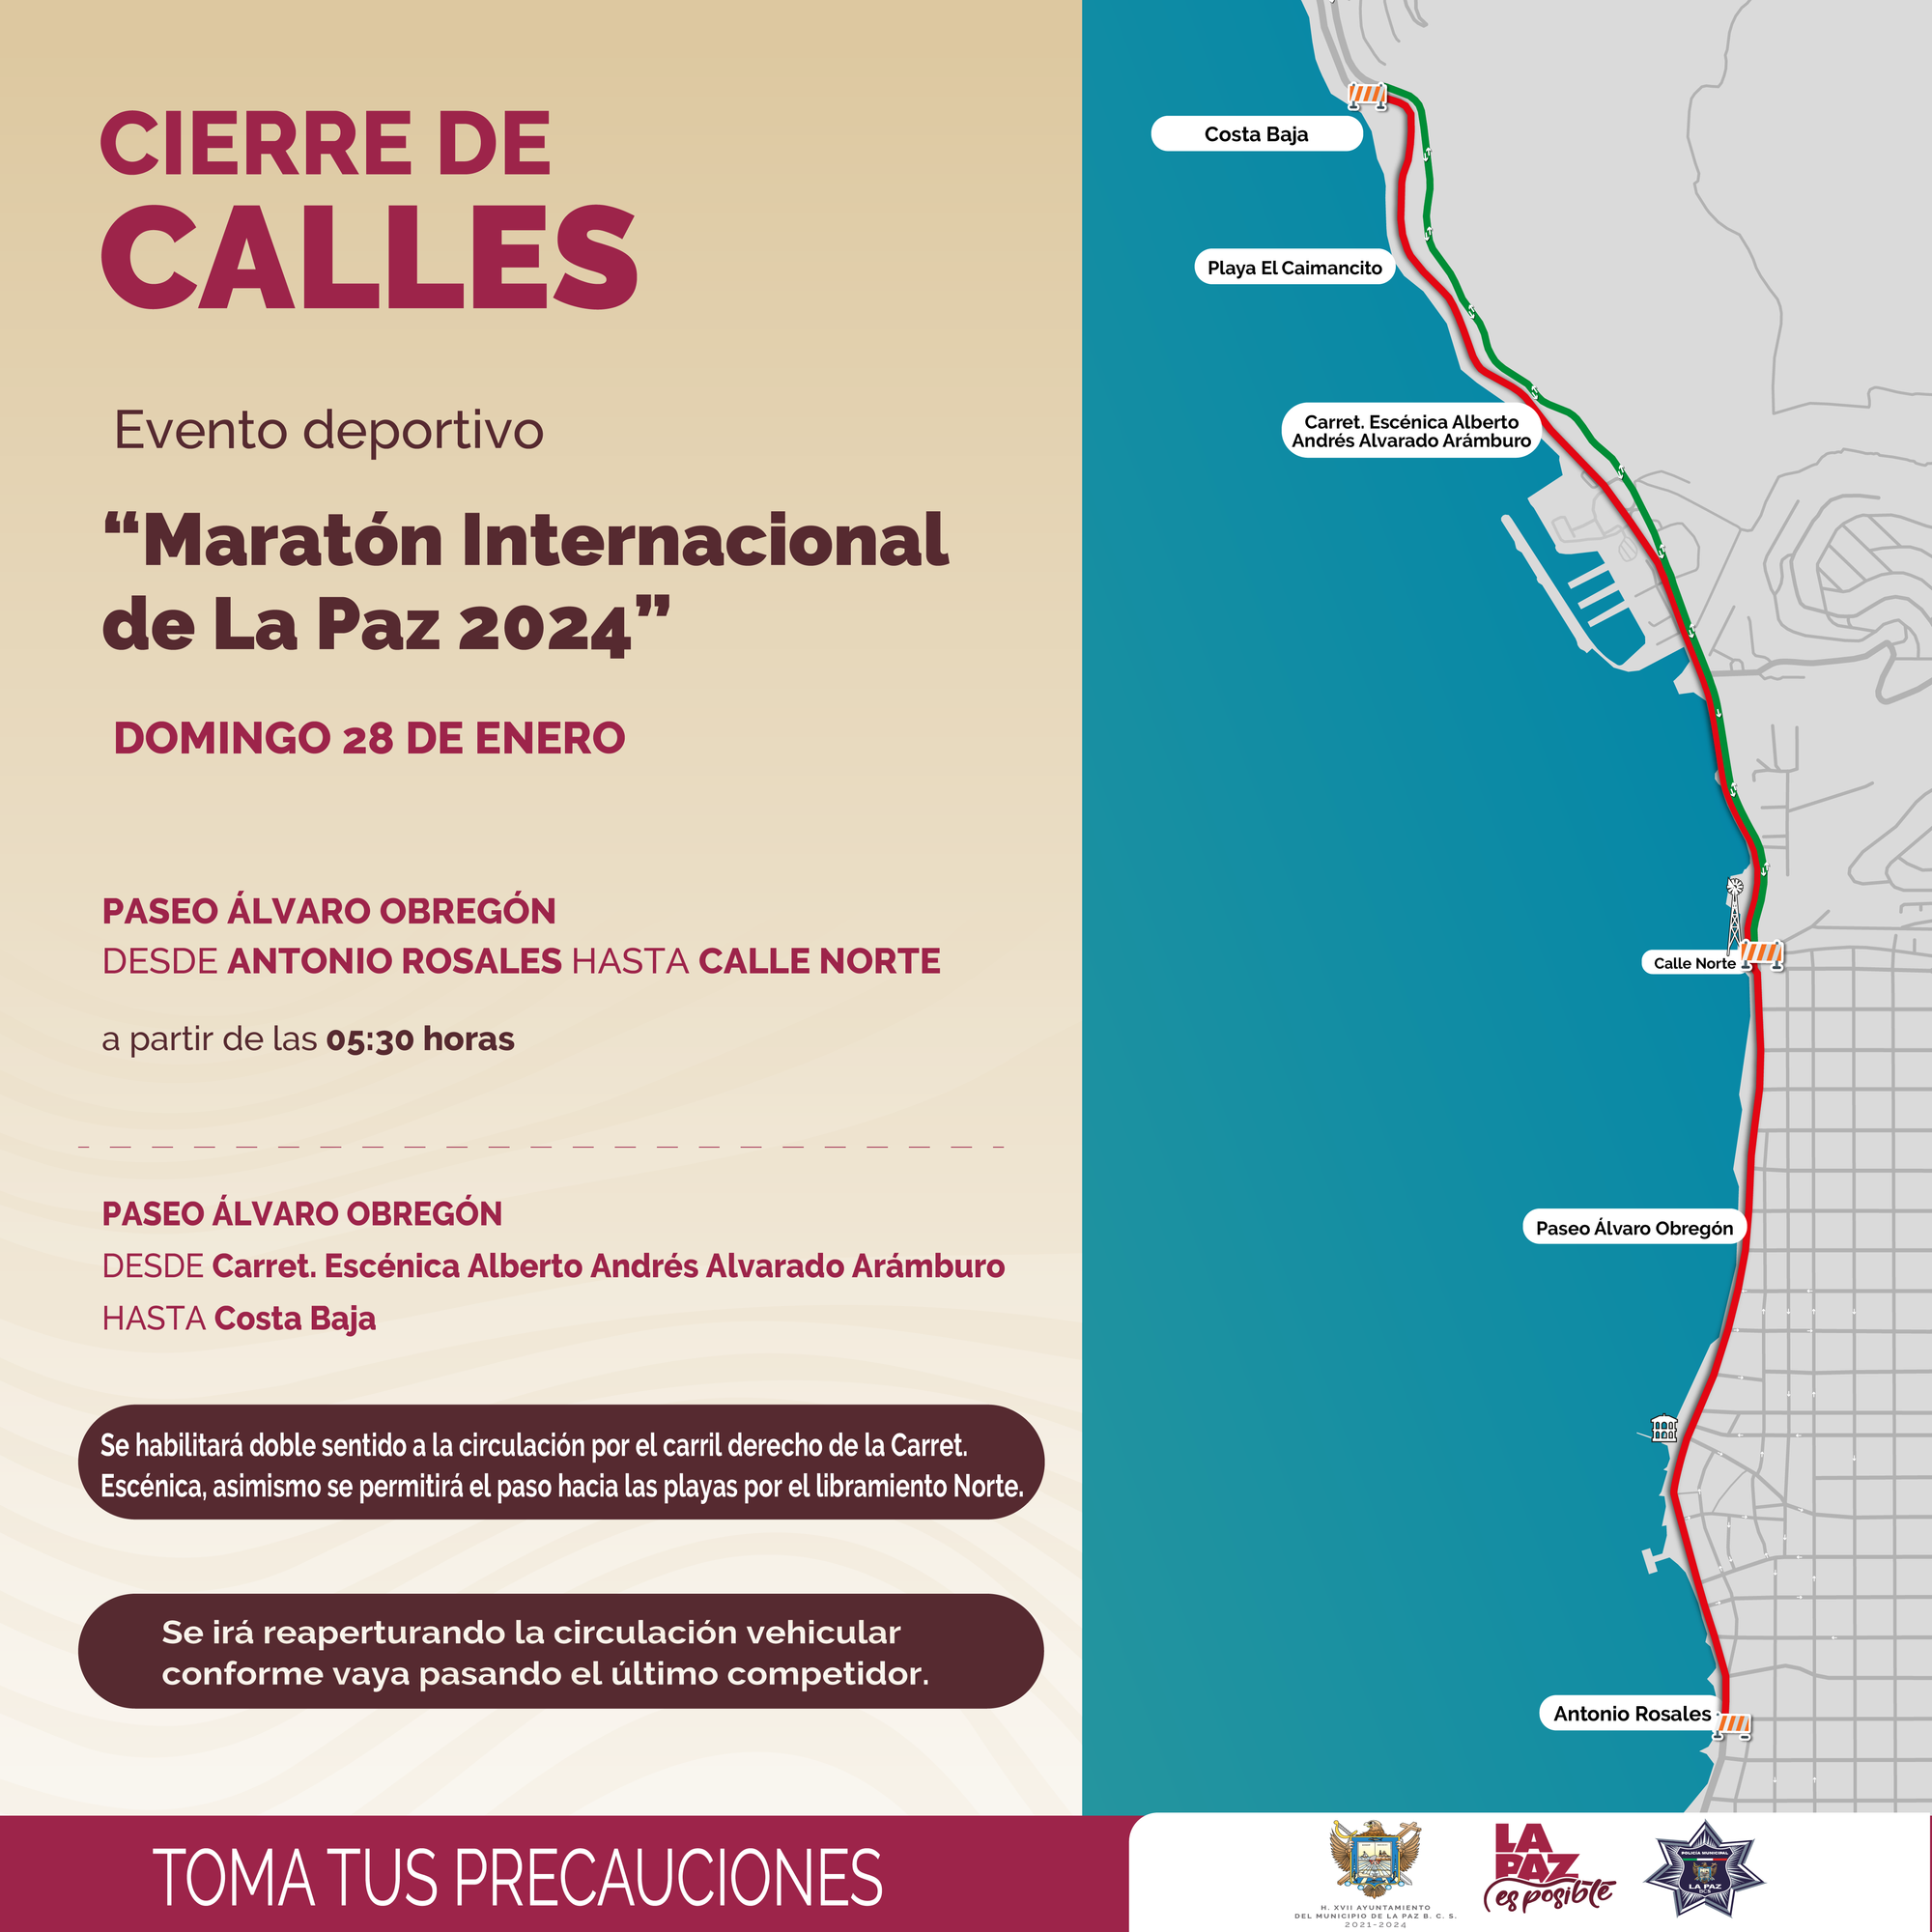 Domingo 28 de enero se realizará el cierre a la circulación en el paseo Álvaro Obregón para el desarrollo del “Maratón Internacional de La Paz 2024”